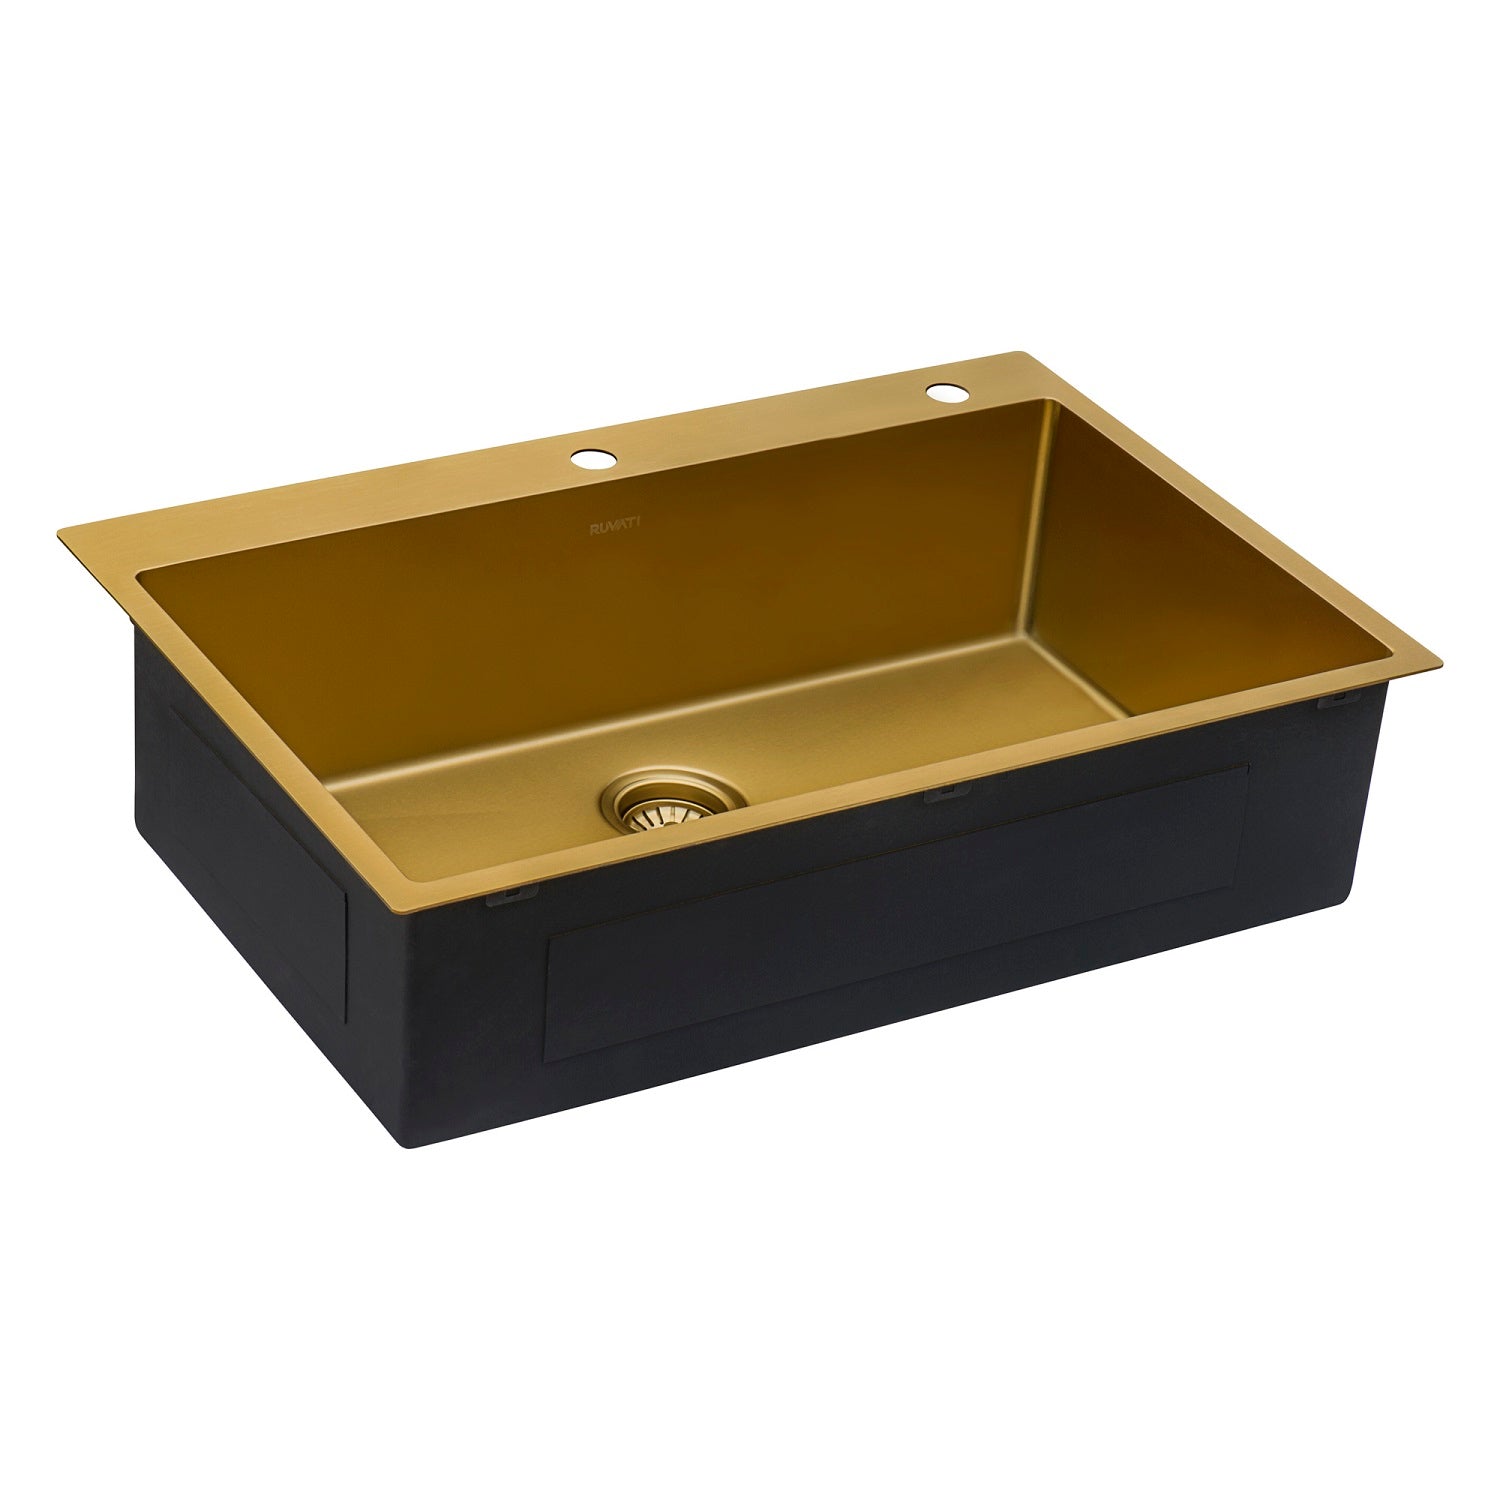 Ruvati 33 x 22 inch Satin Brass Matte Gold Stainless Steel Drop-in Topmount Kitchen Sink Single Bowl RVH5005GG - 5